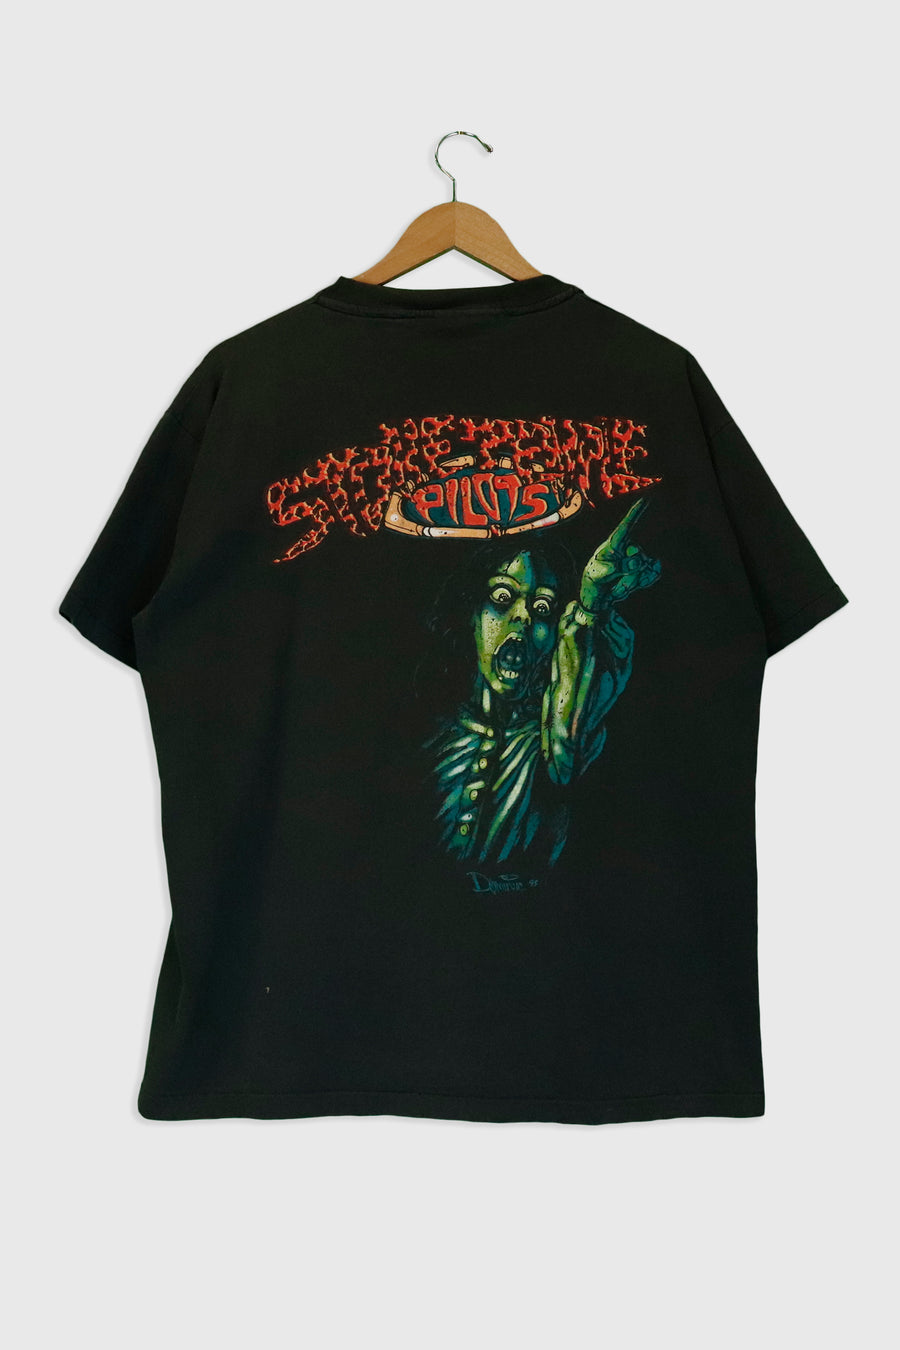 Vintage Stone Temple Pilots T Shirt Sz L